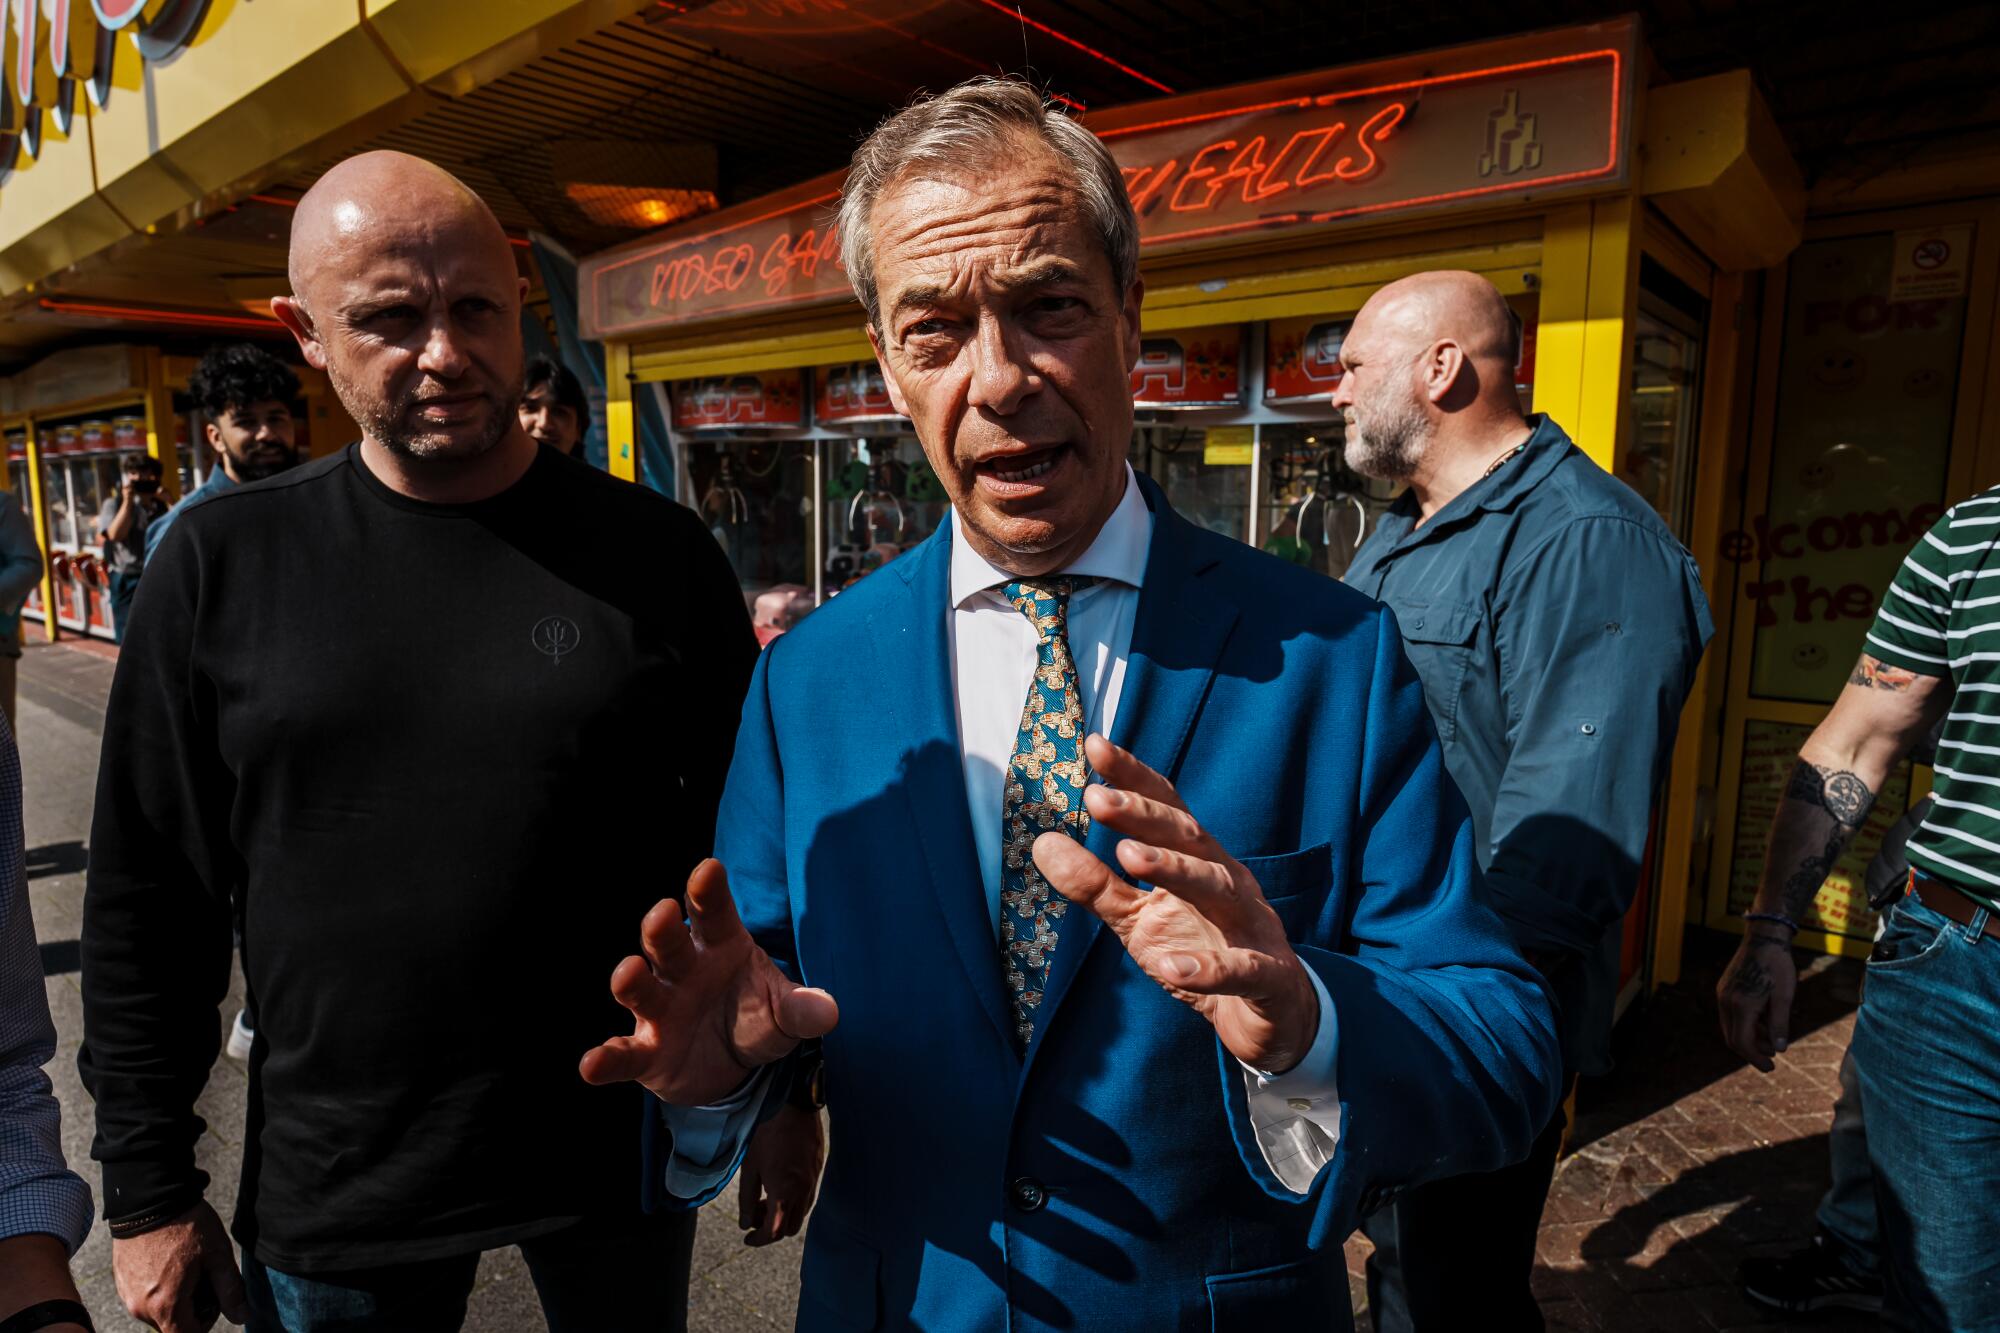 身着亮蓝色西装的奈杰尔·法拉奇 (Nigel Farage) 说道。